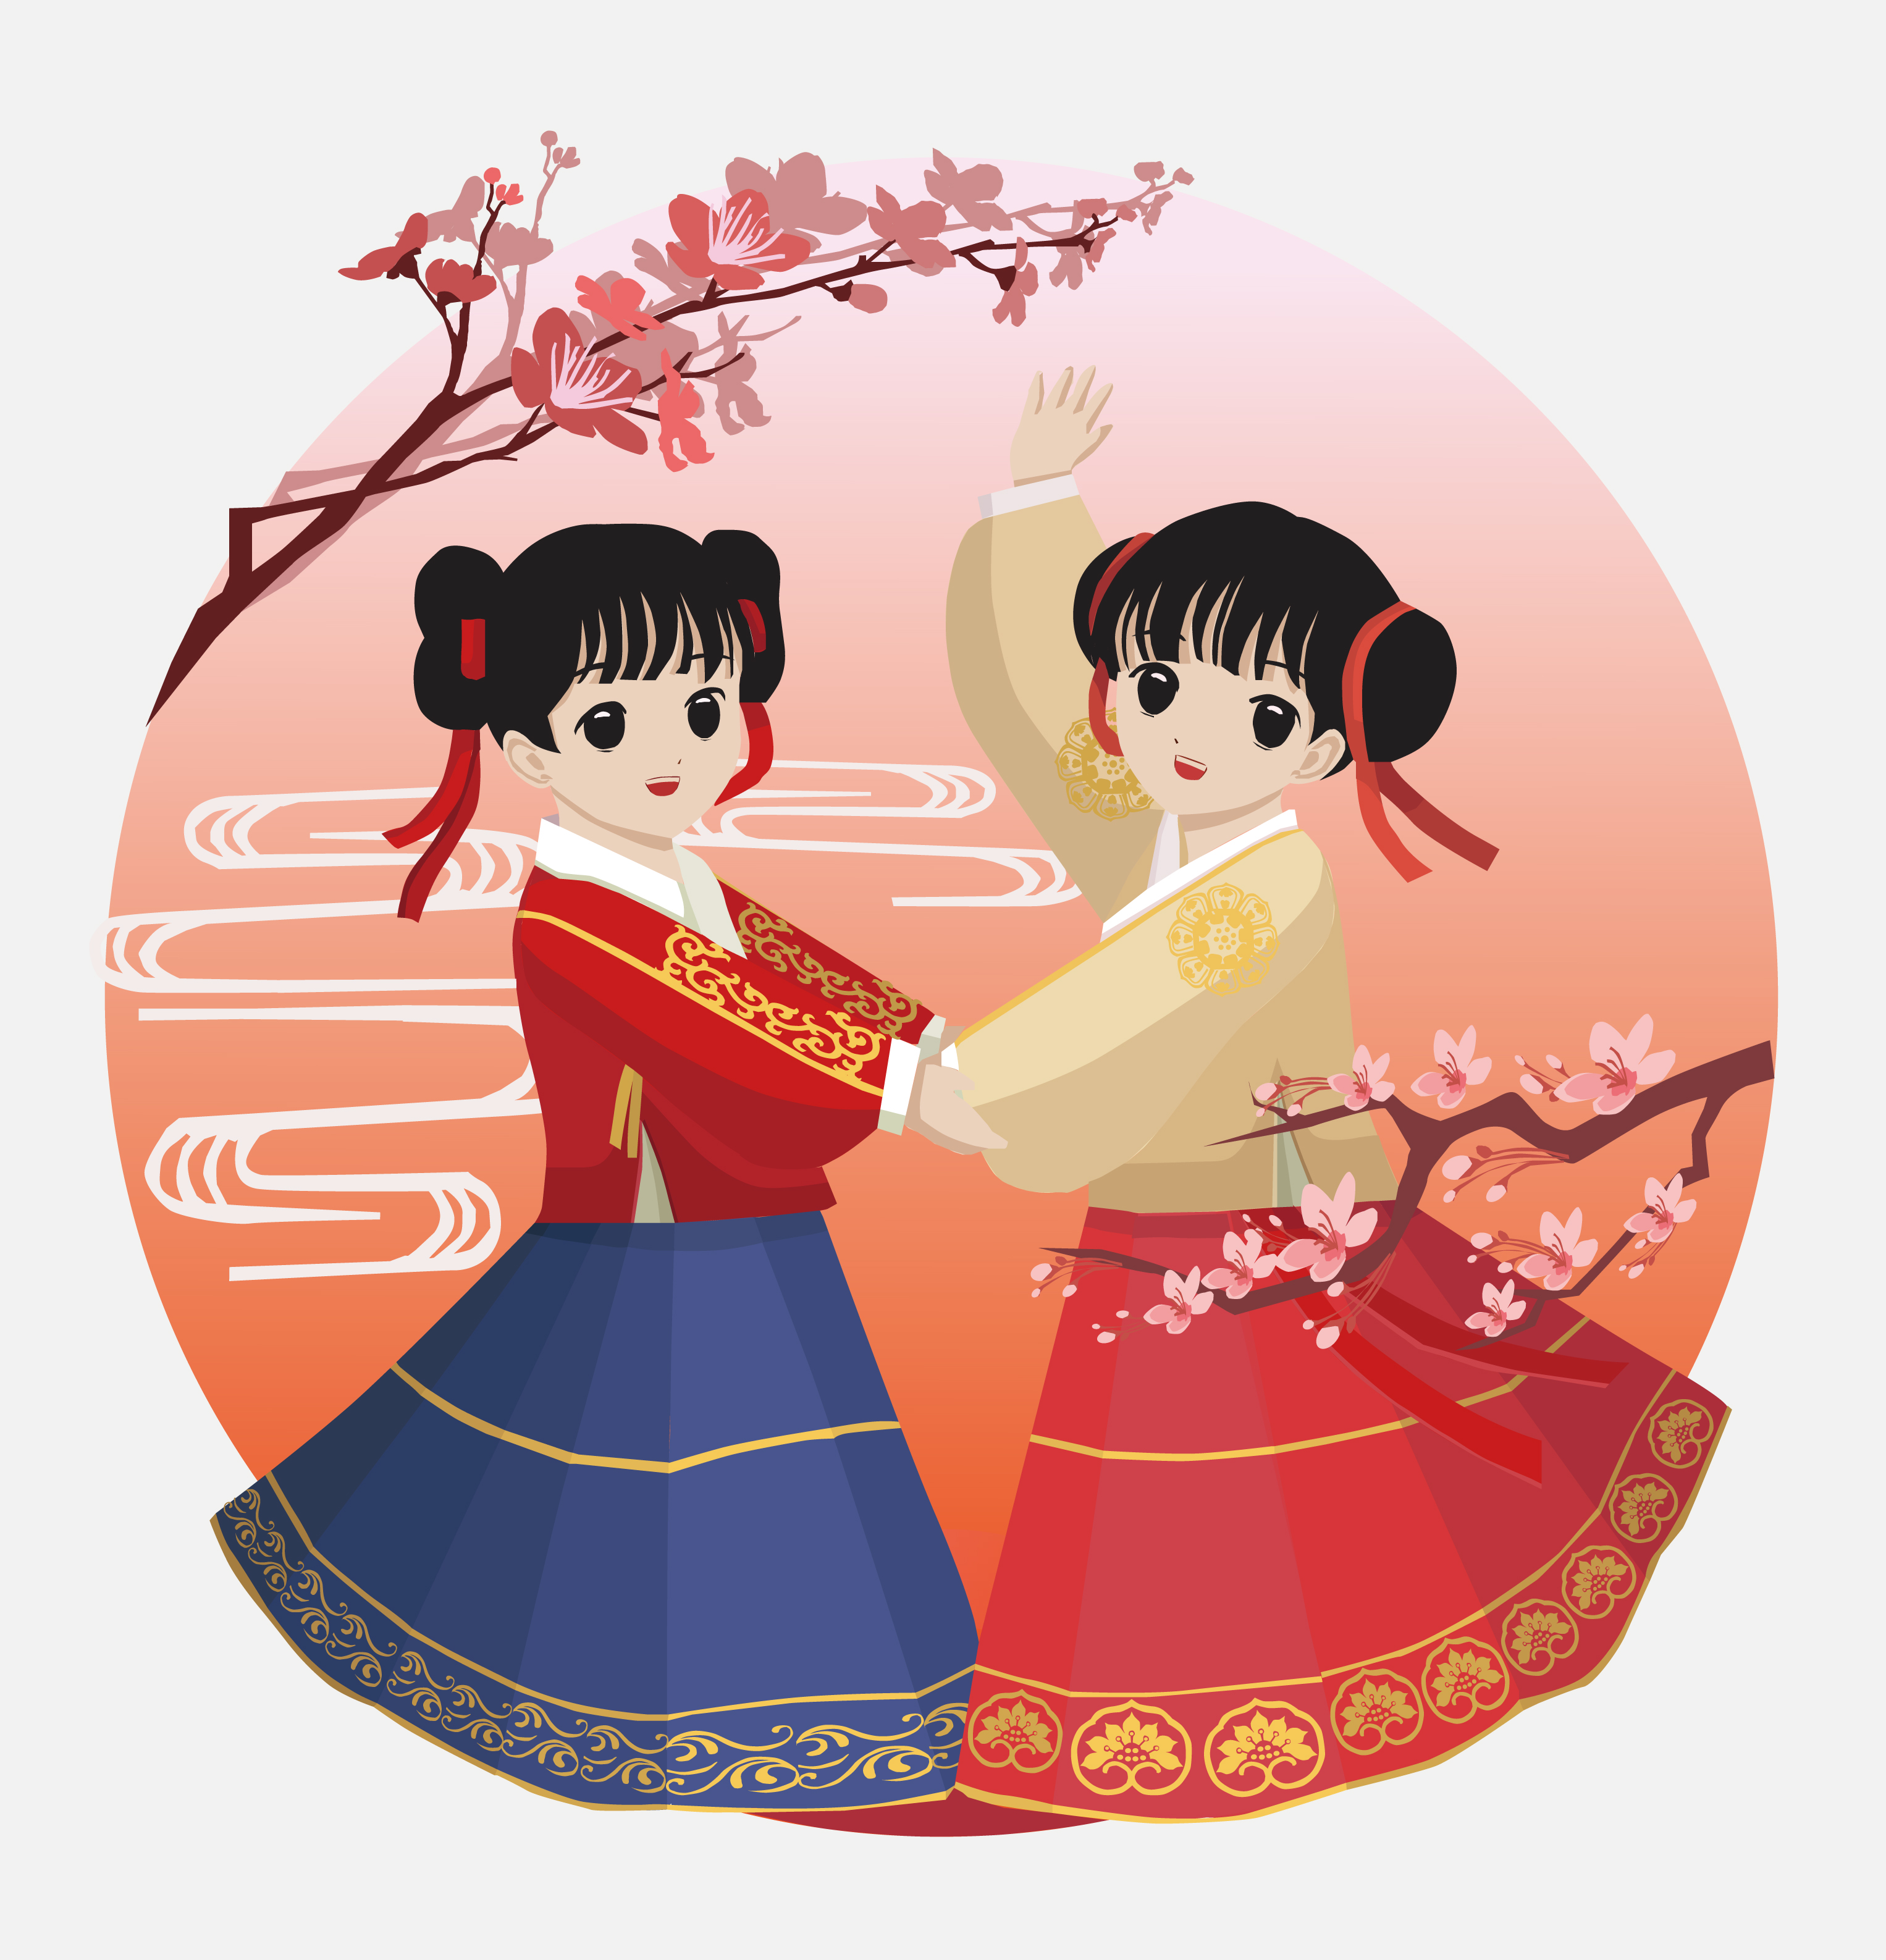 中国传统节日插画设计